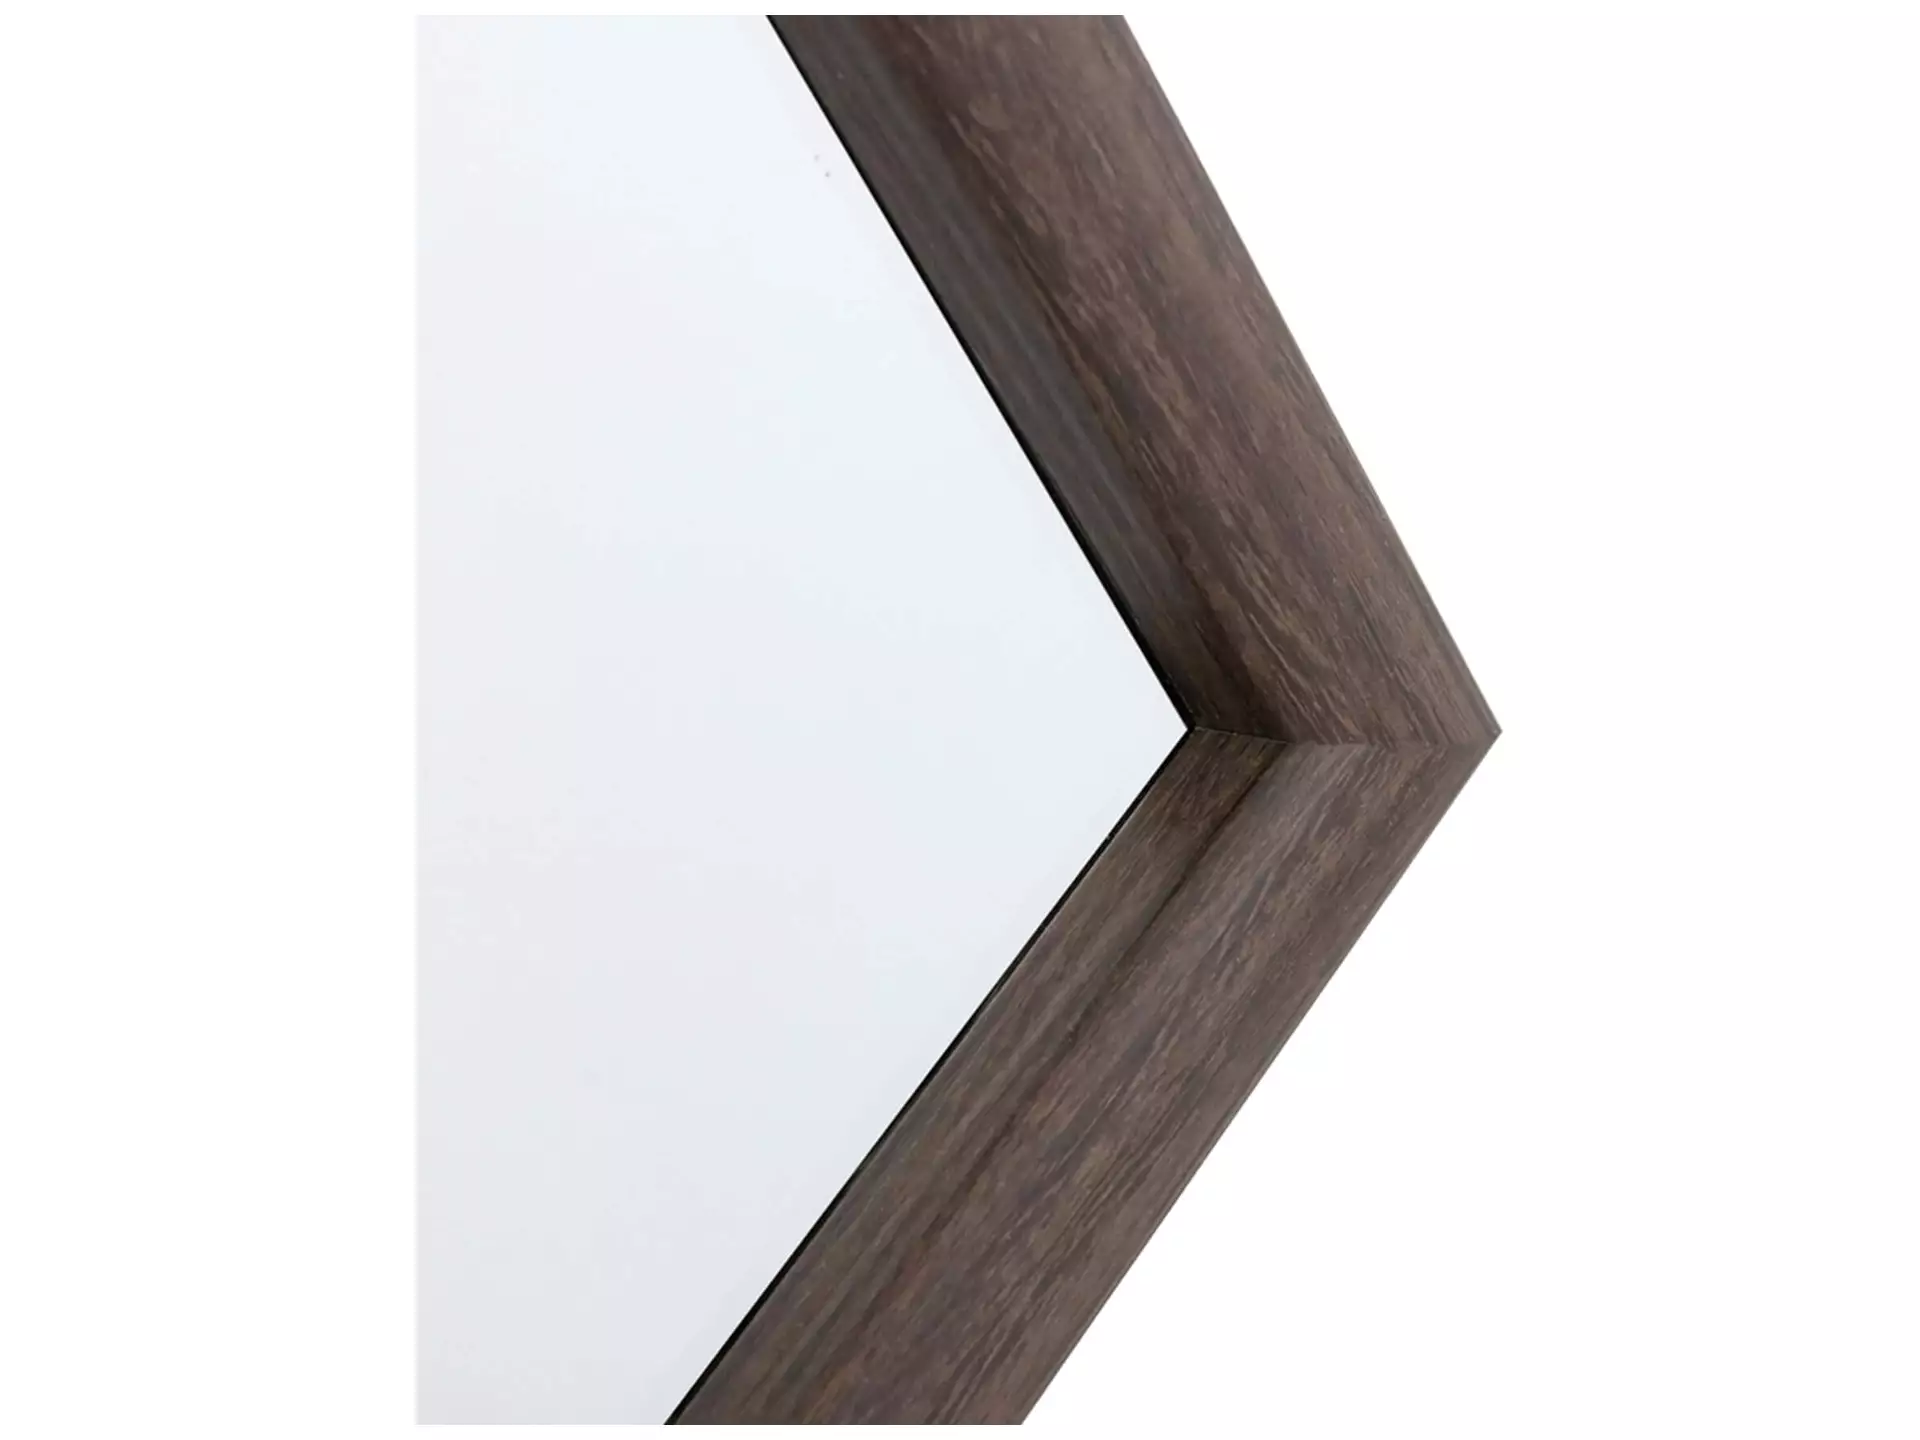 Standspiegel Mit Holzrahmen 40 x 150 cm image LAND